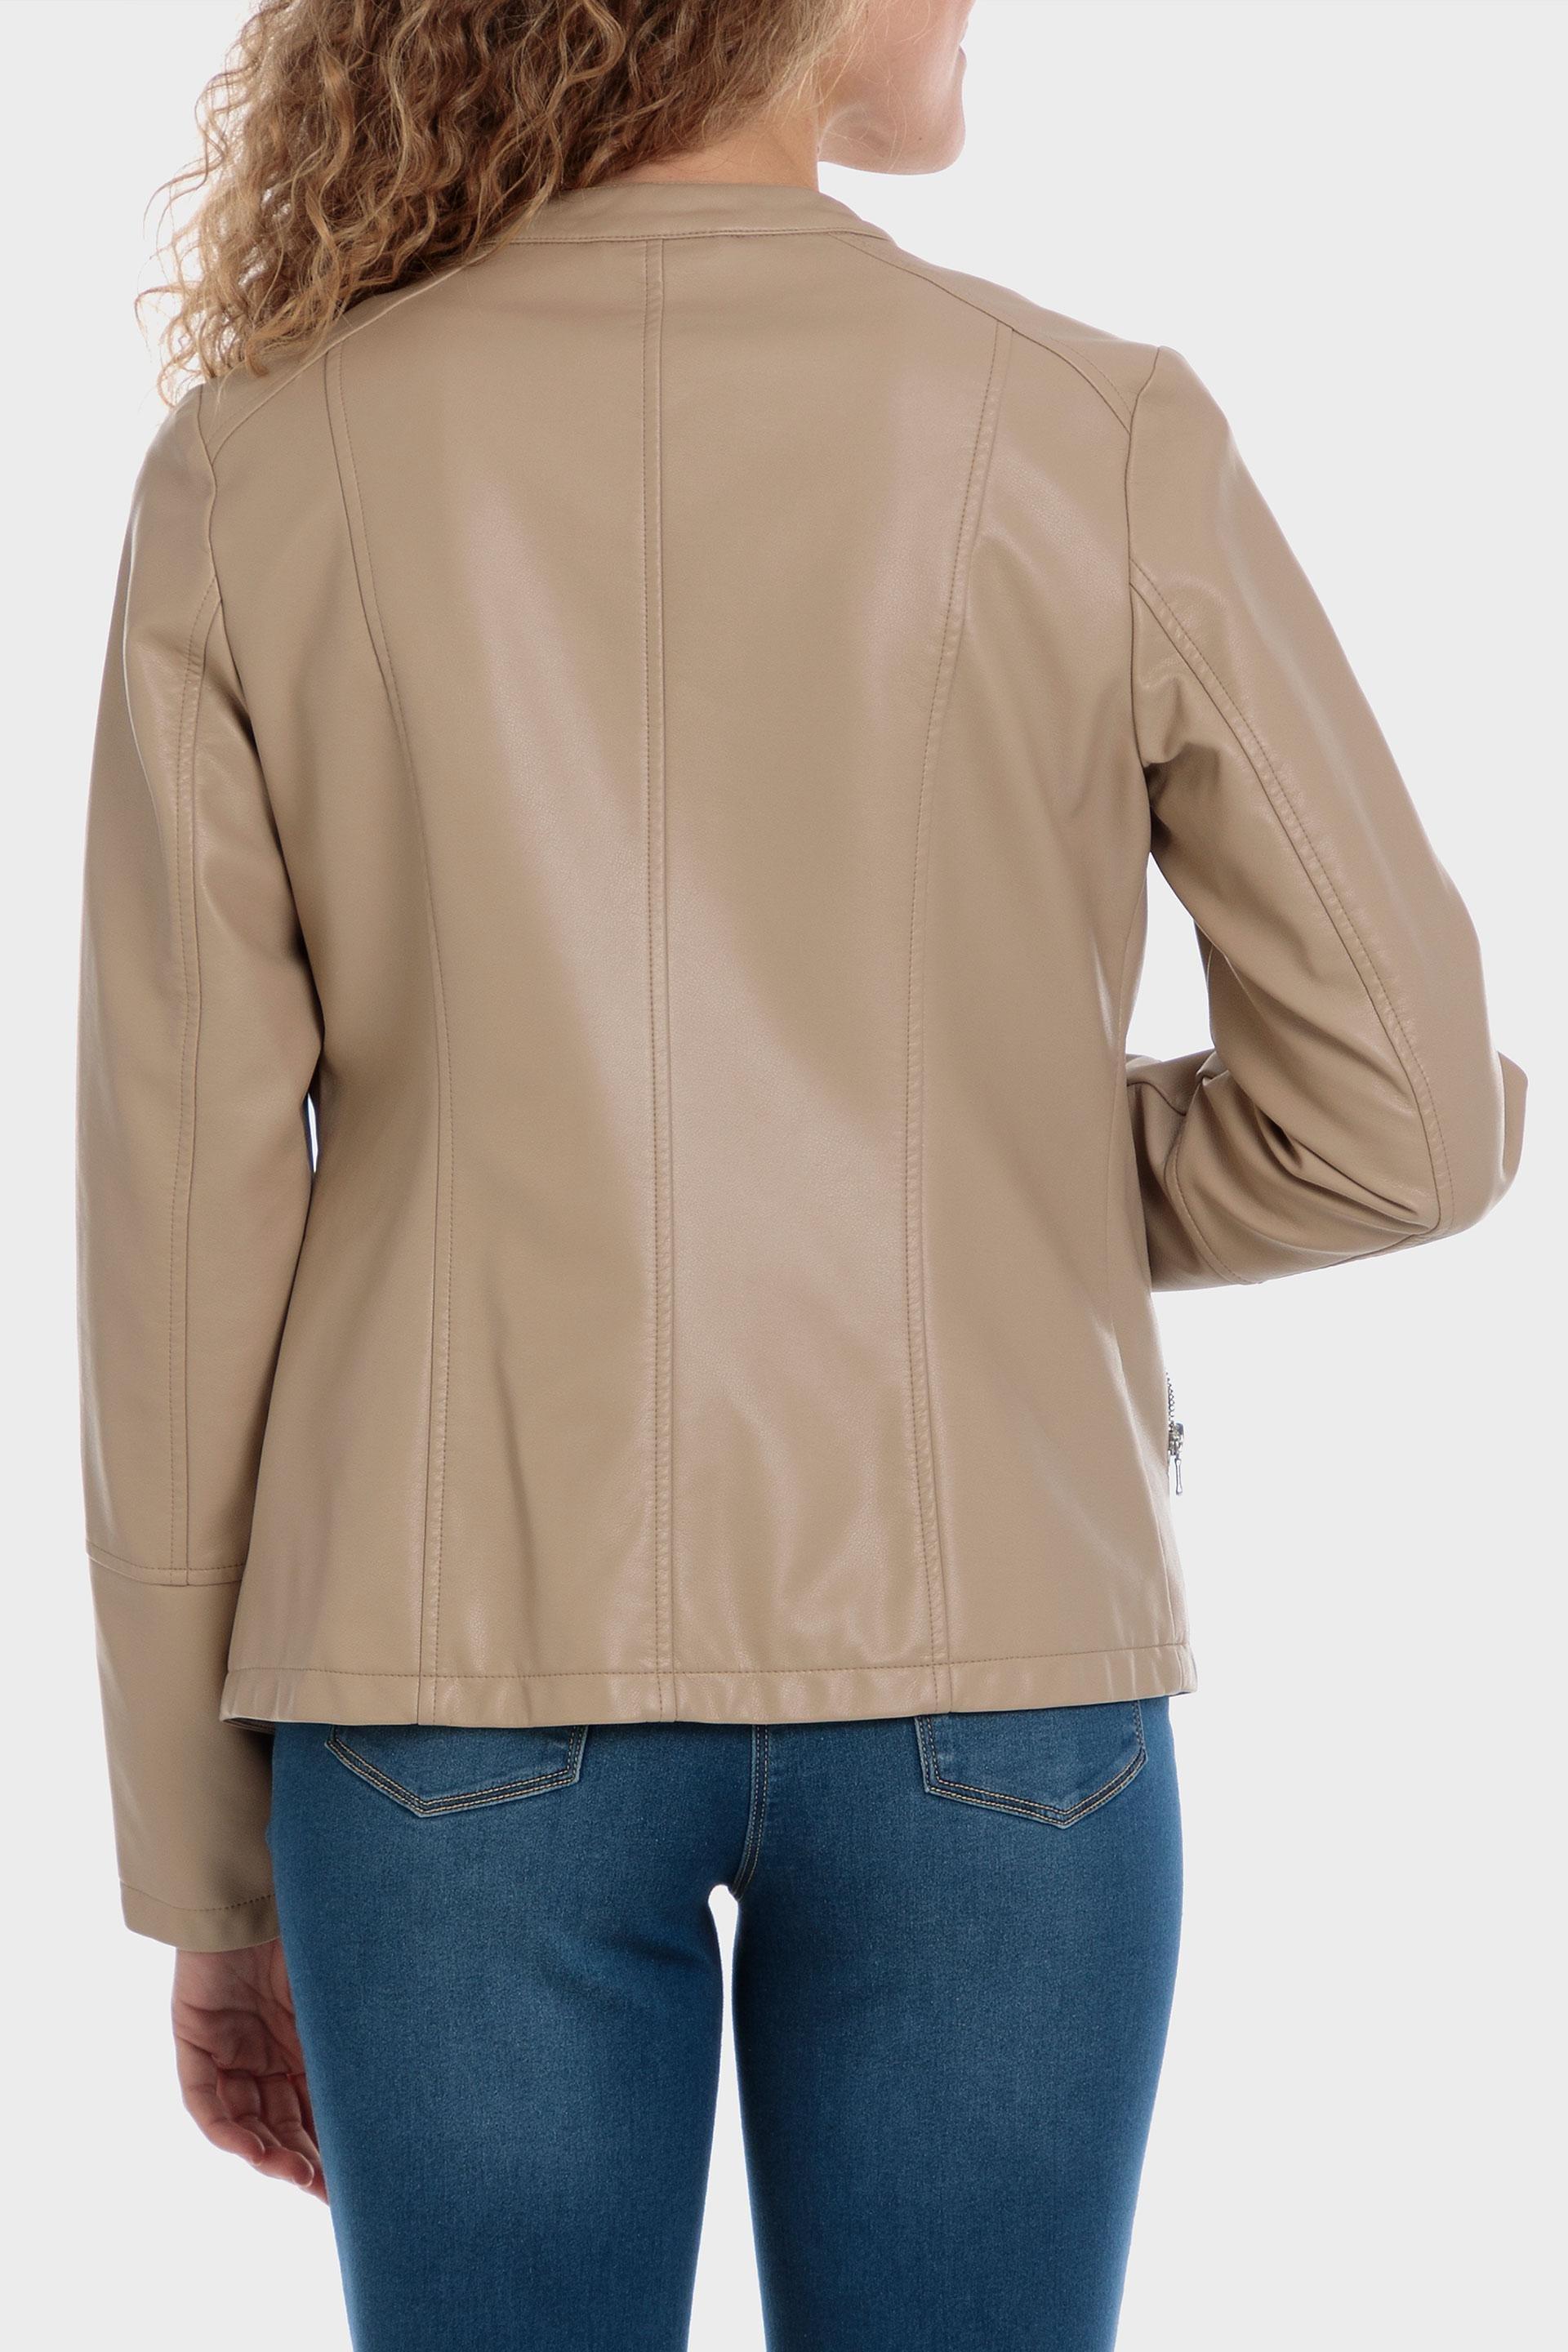 Punt Roma - Beige Leather Jacket